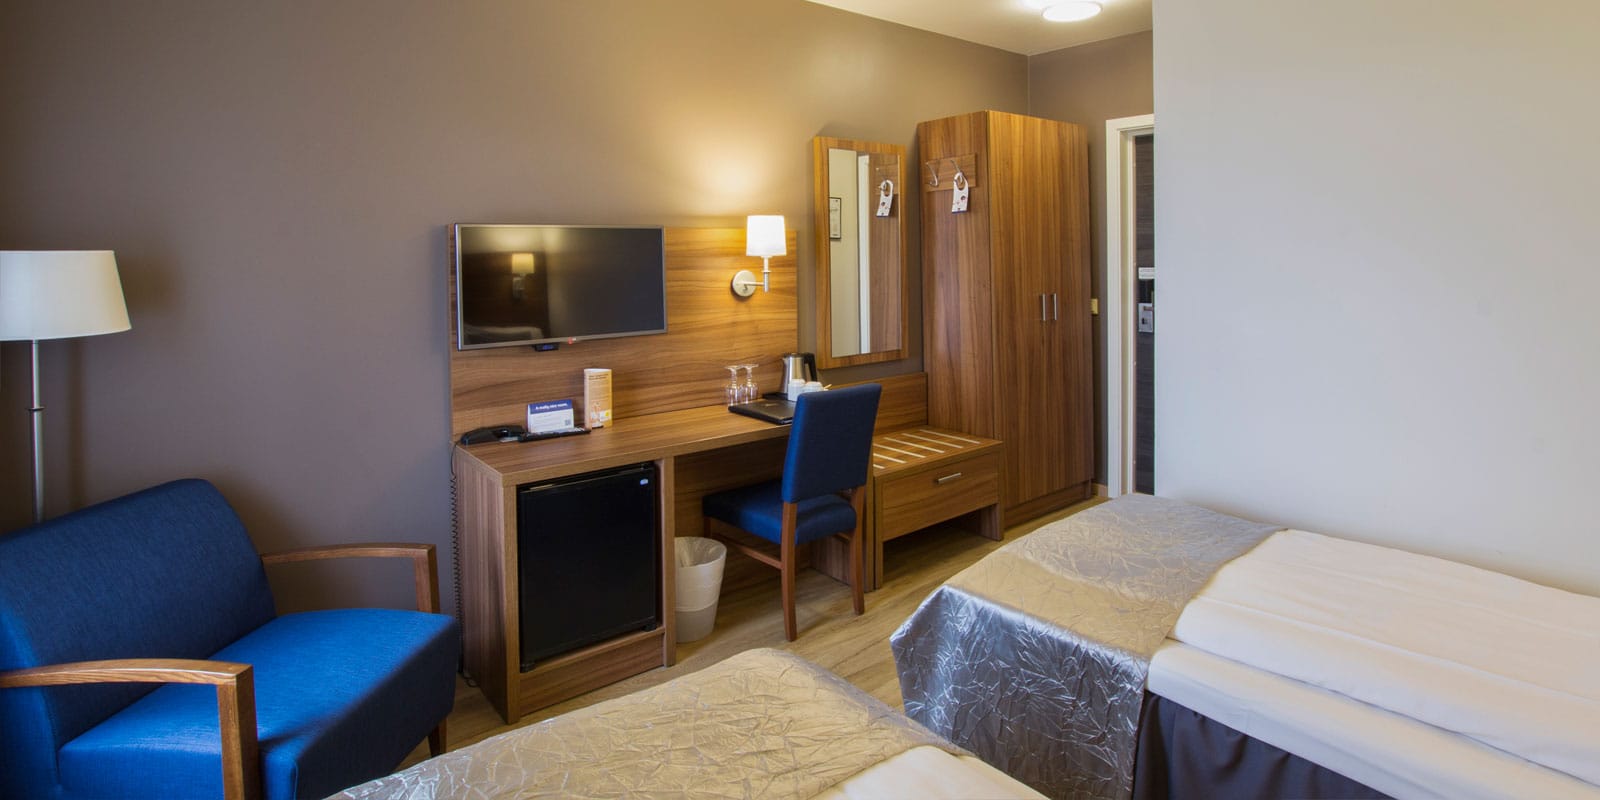 Två sängar i standard twinrum på Hotel Horten